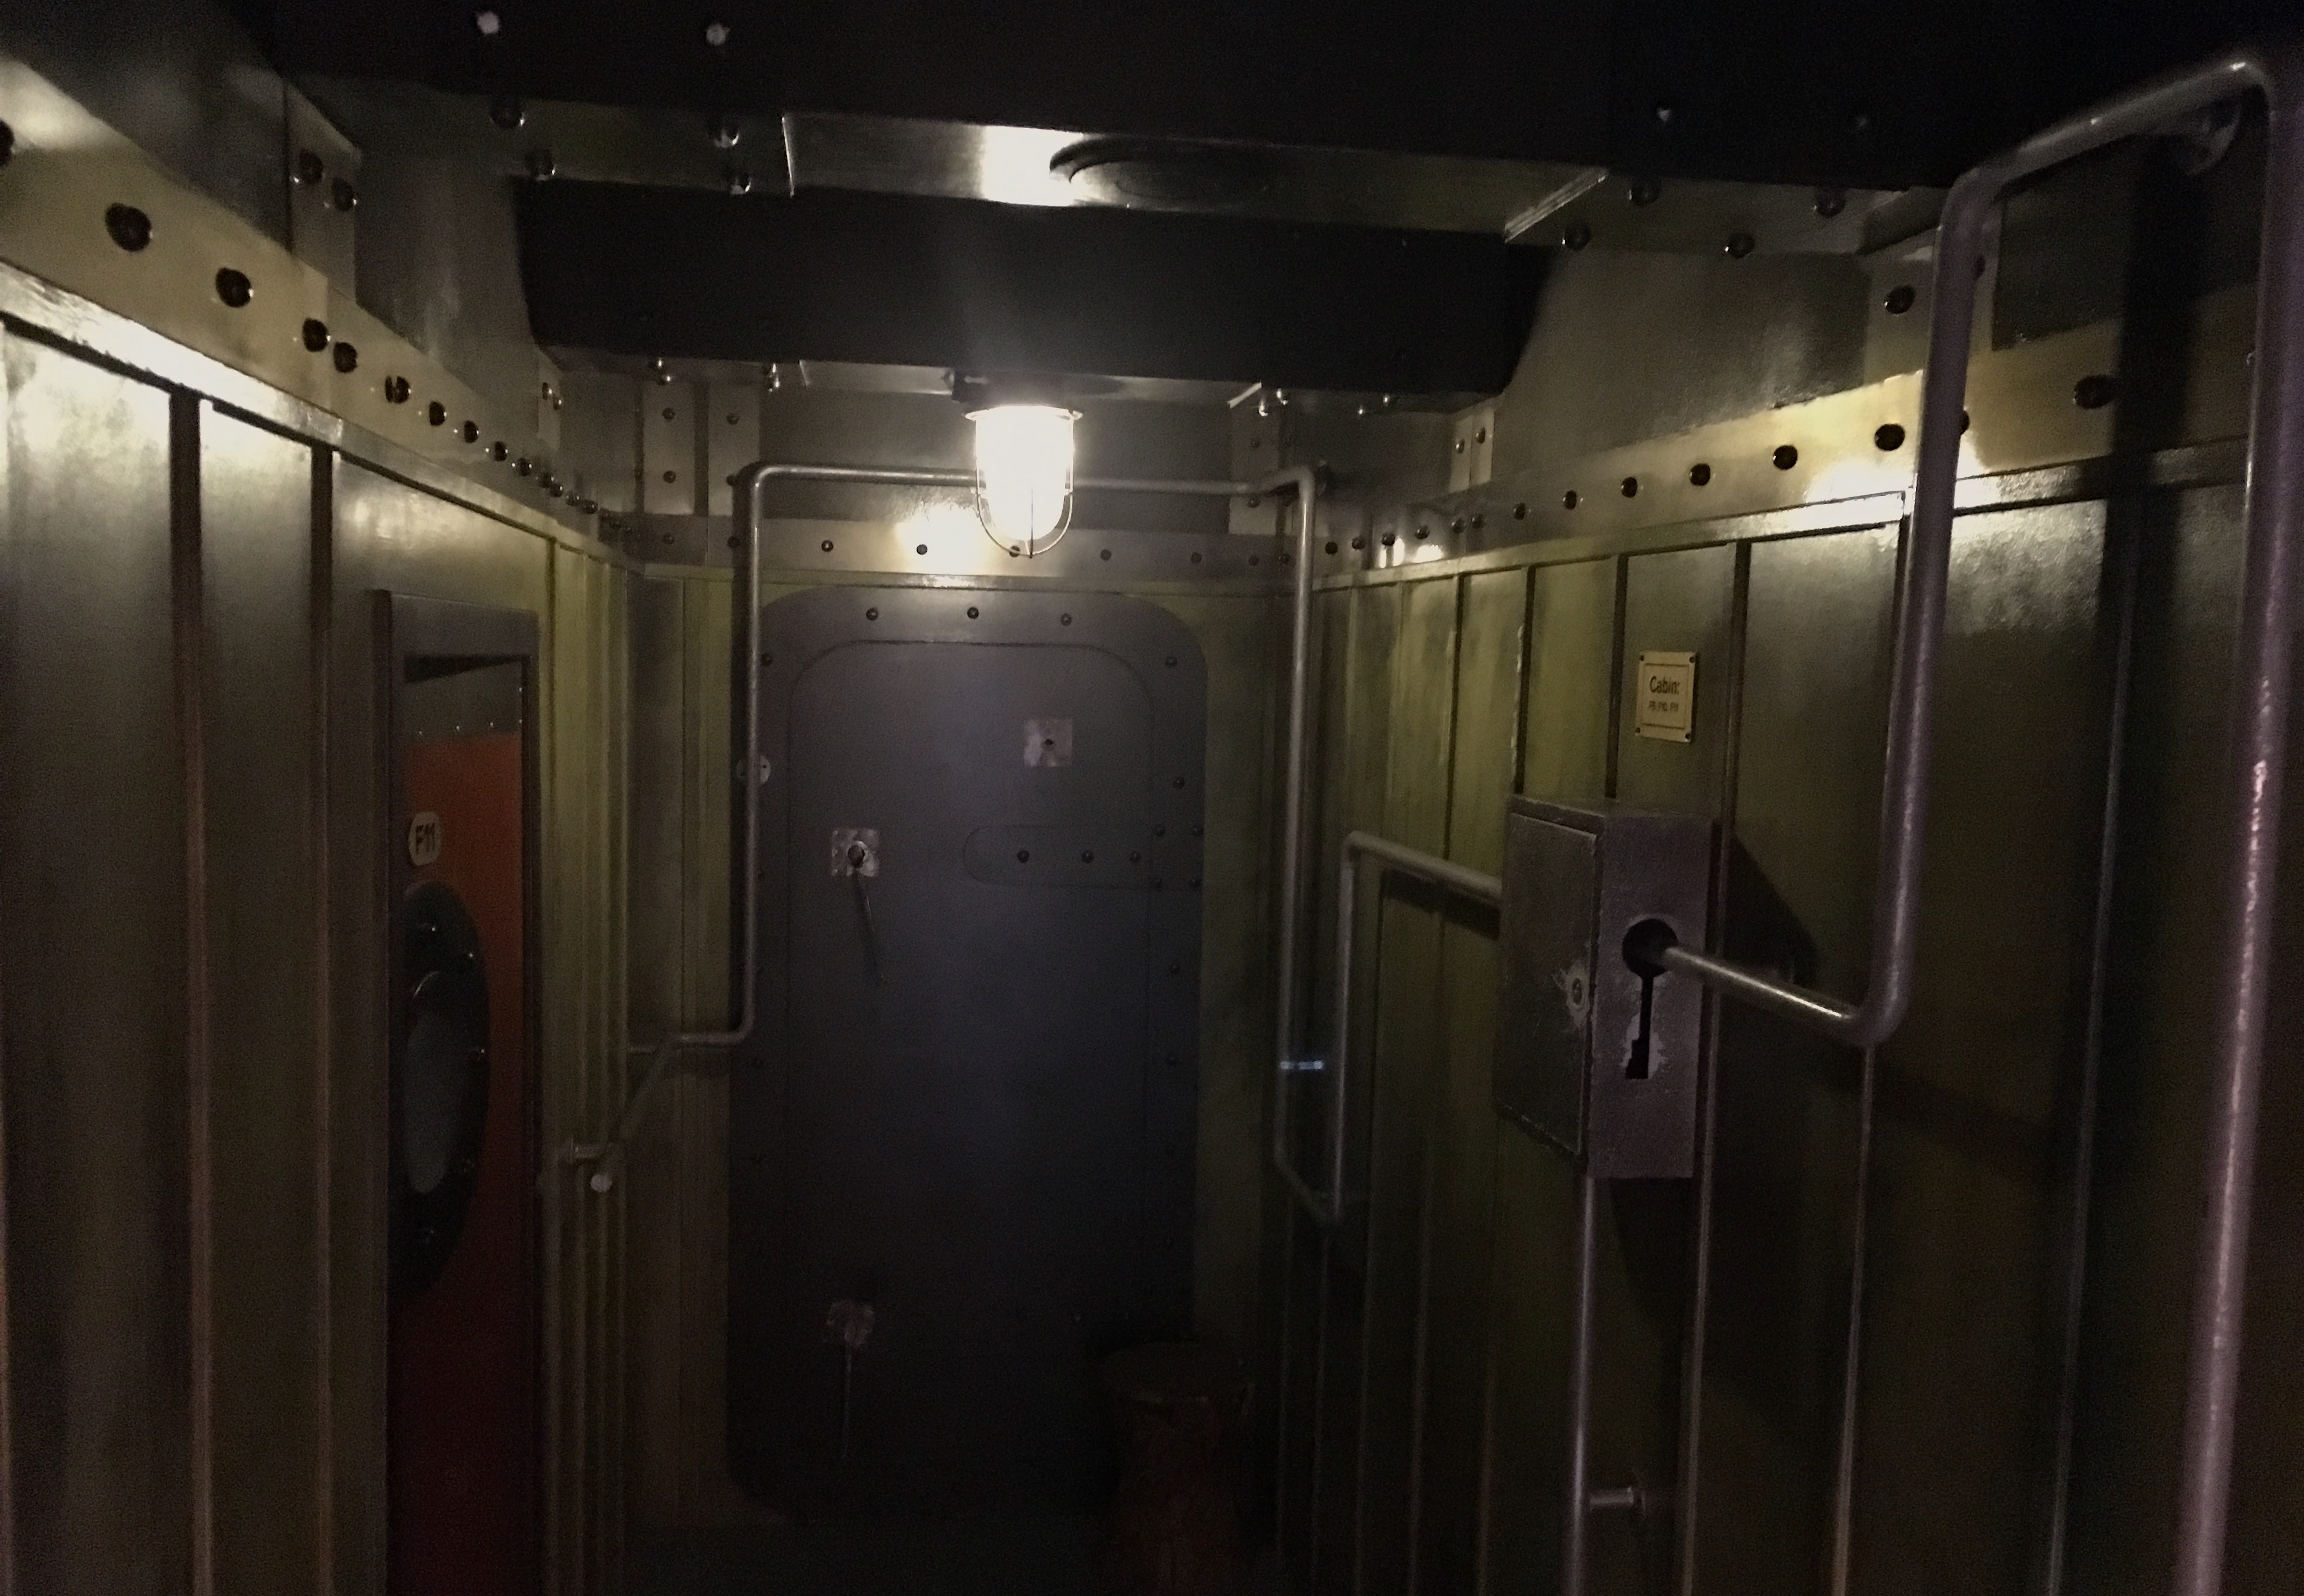 houdini titanic escape room